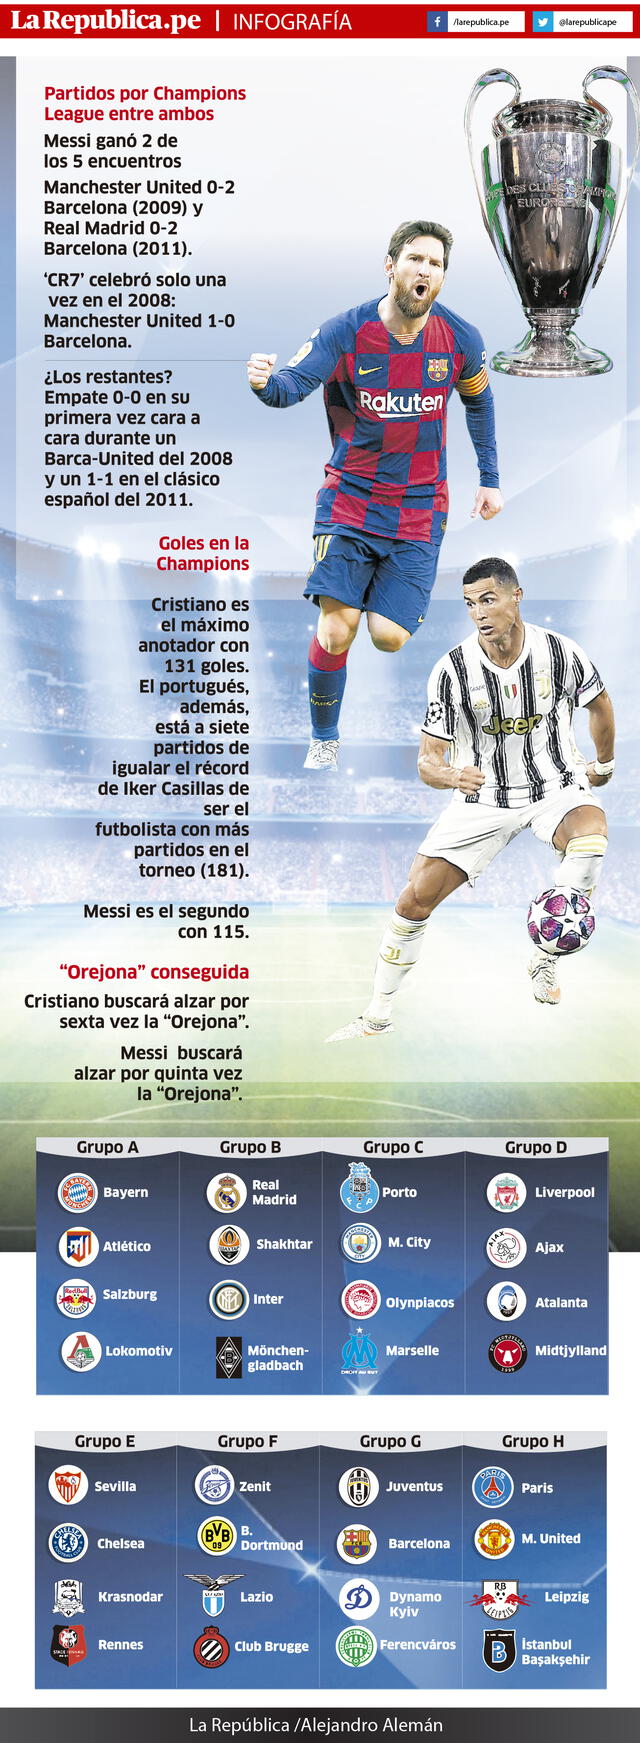 Infografia Champions League Messi y Cristiano Ronaldo